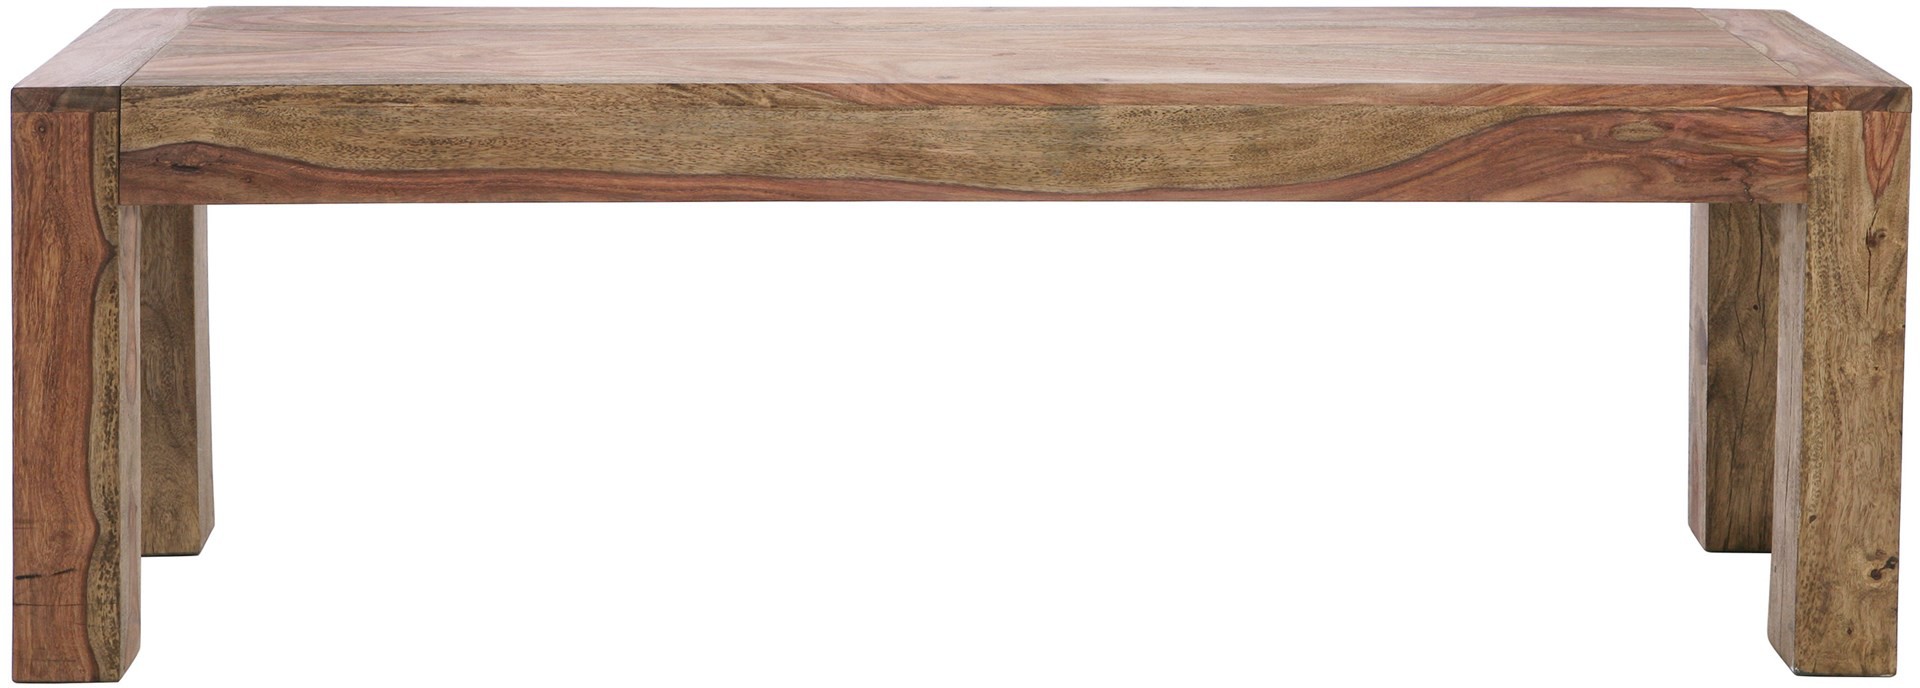 Dřevěná lavice masiv Authentico 140cm - KARE